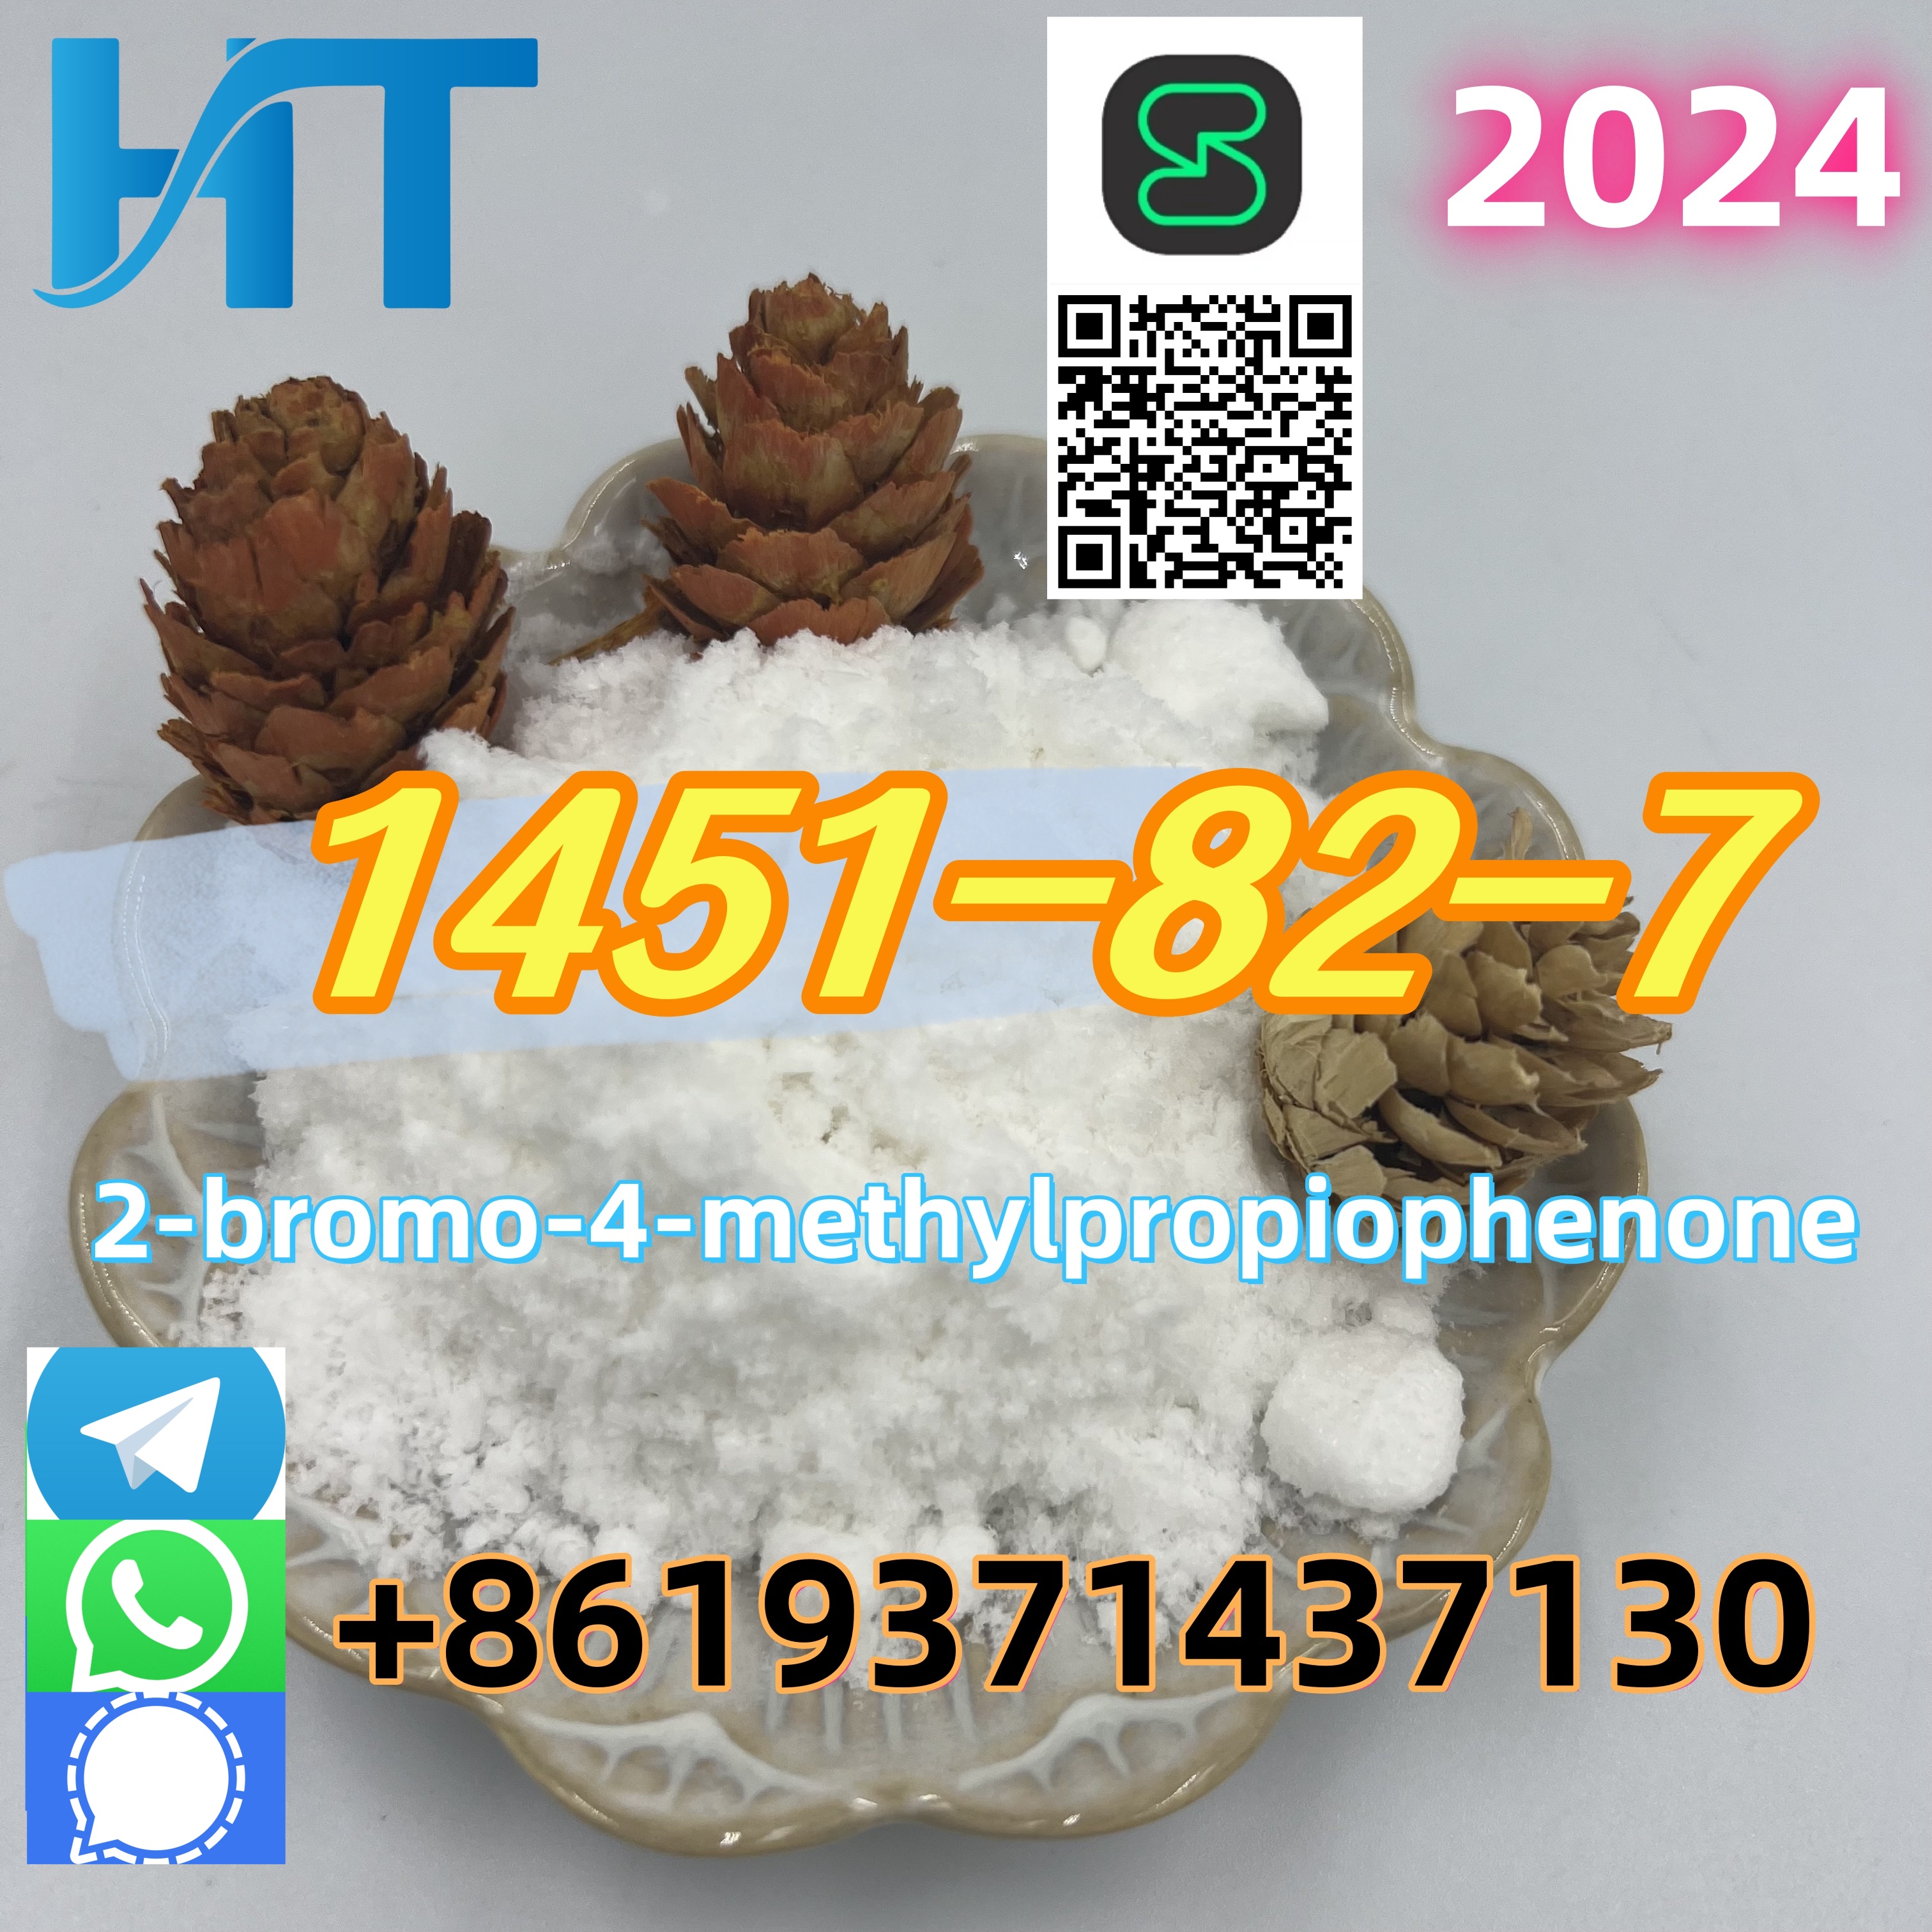 PMK and BMK oil 1451-82-7 2-bromo-4-methylpropiophenone